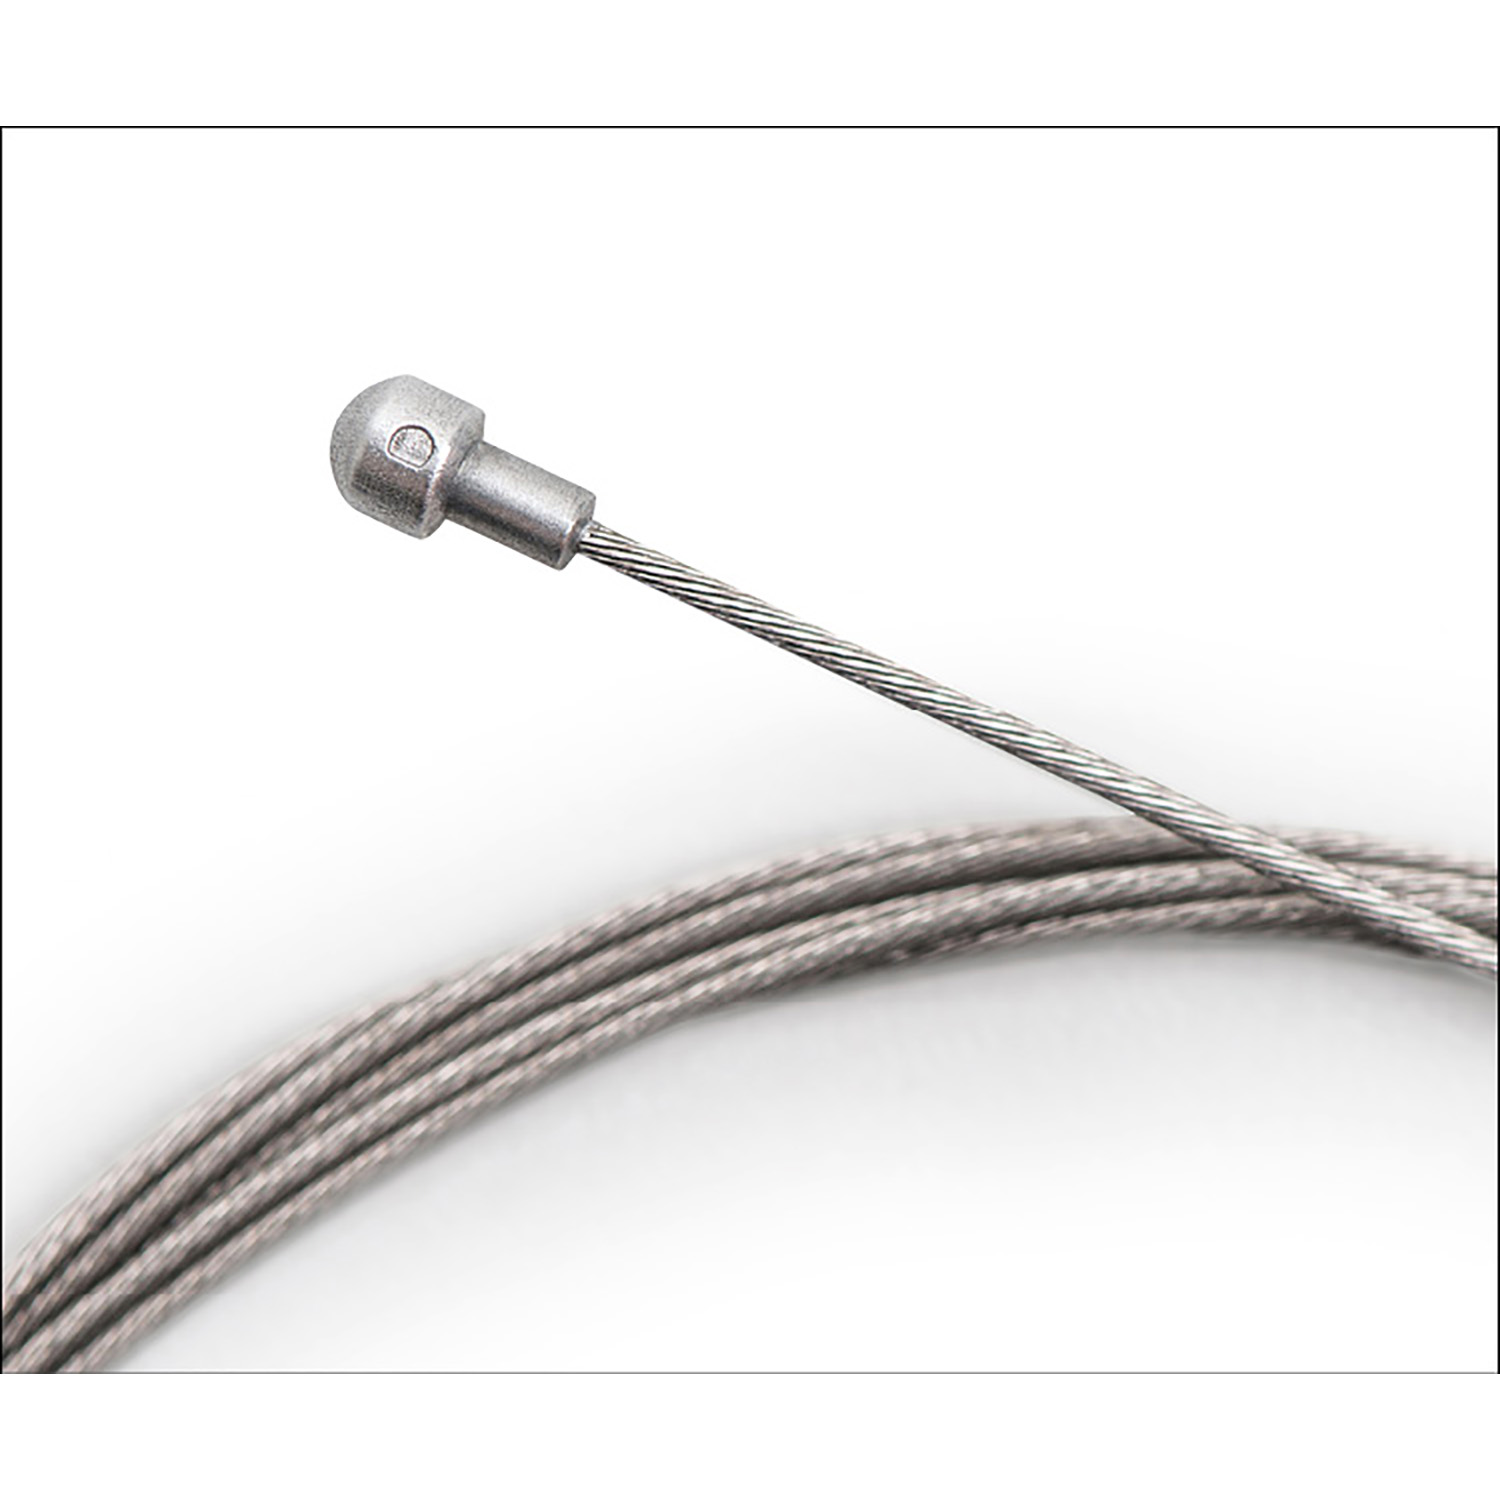 Cable interno para frenos de acero inoxidable, 2m